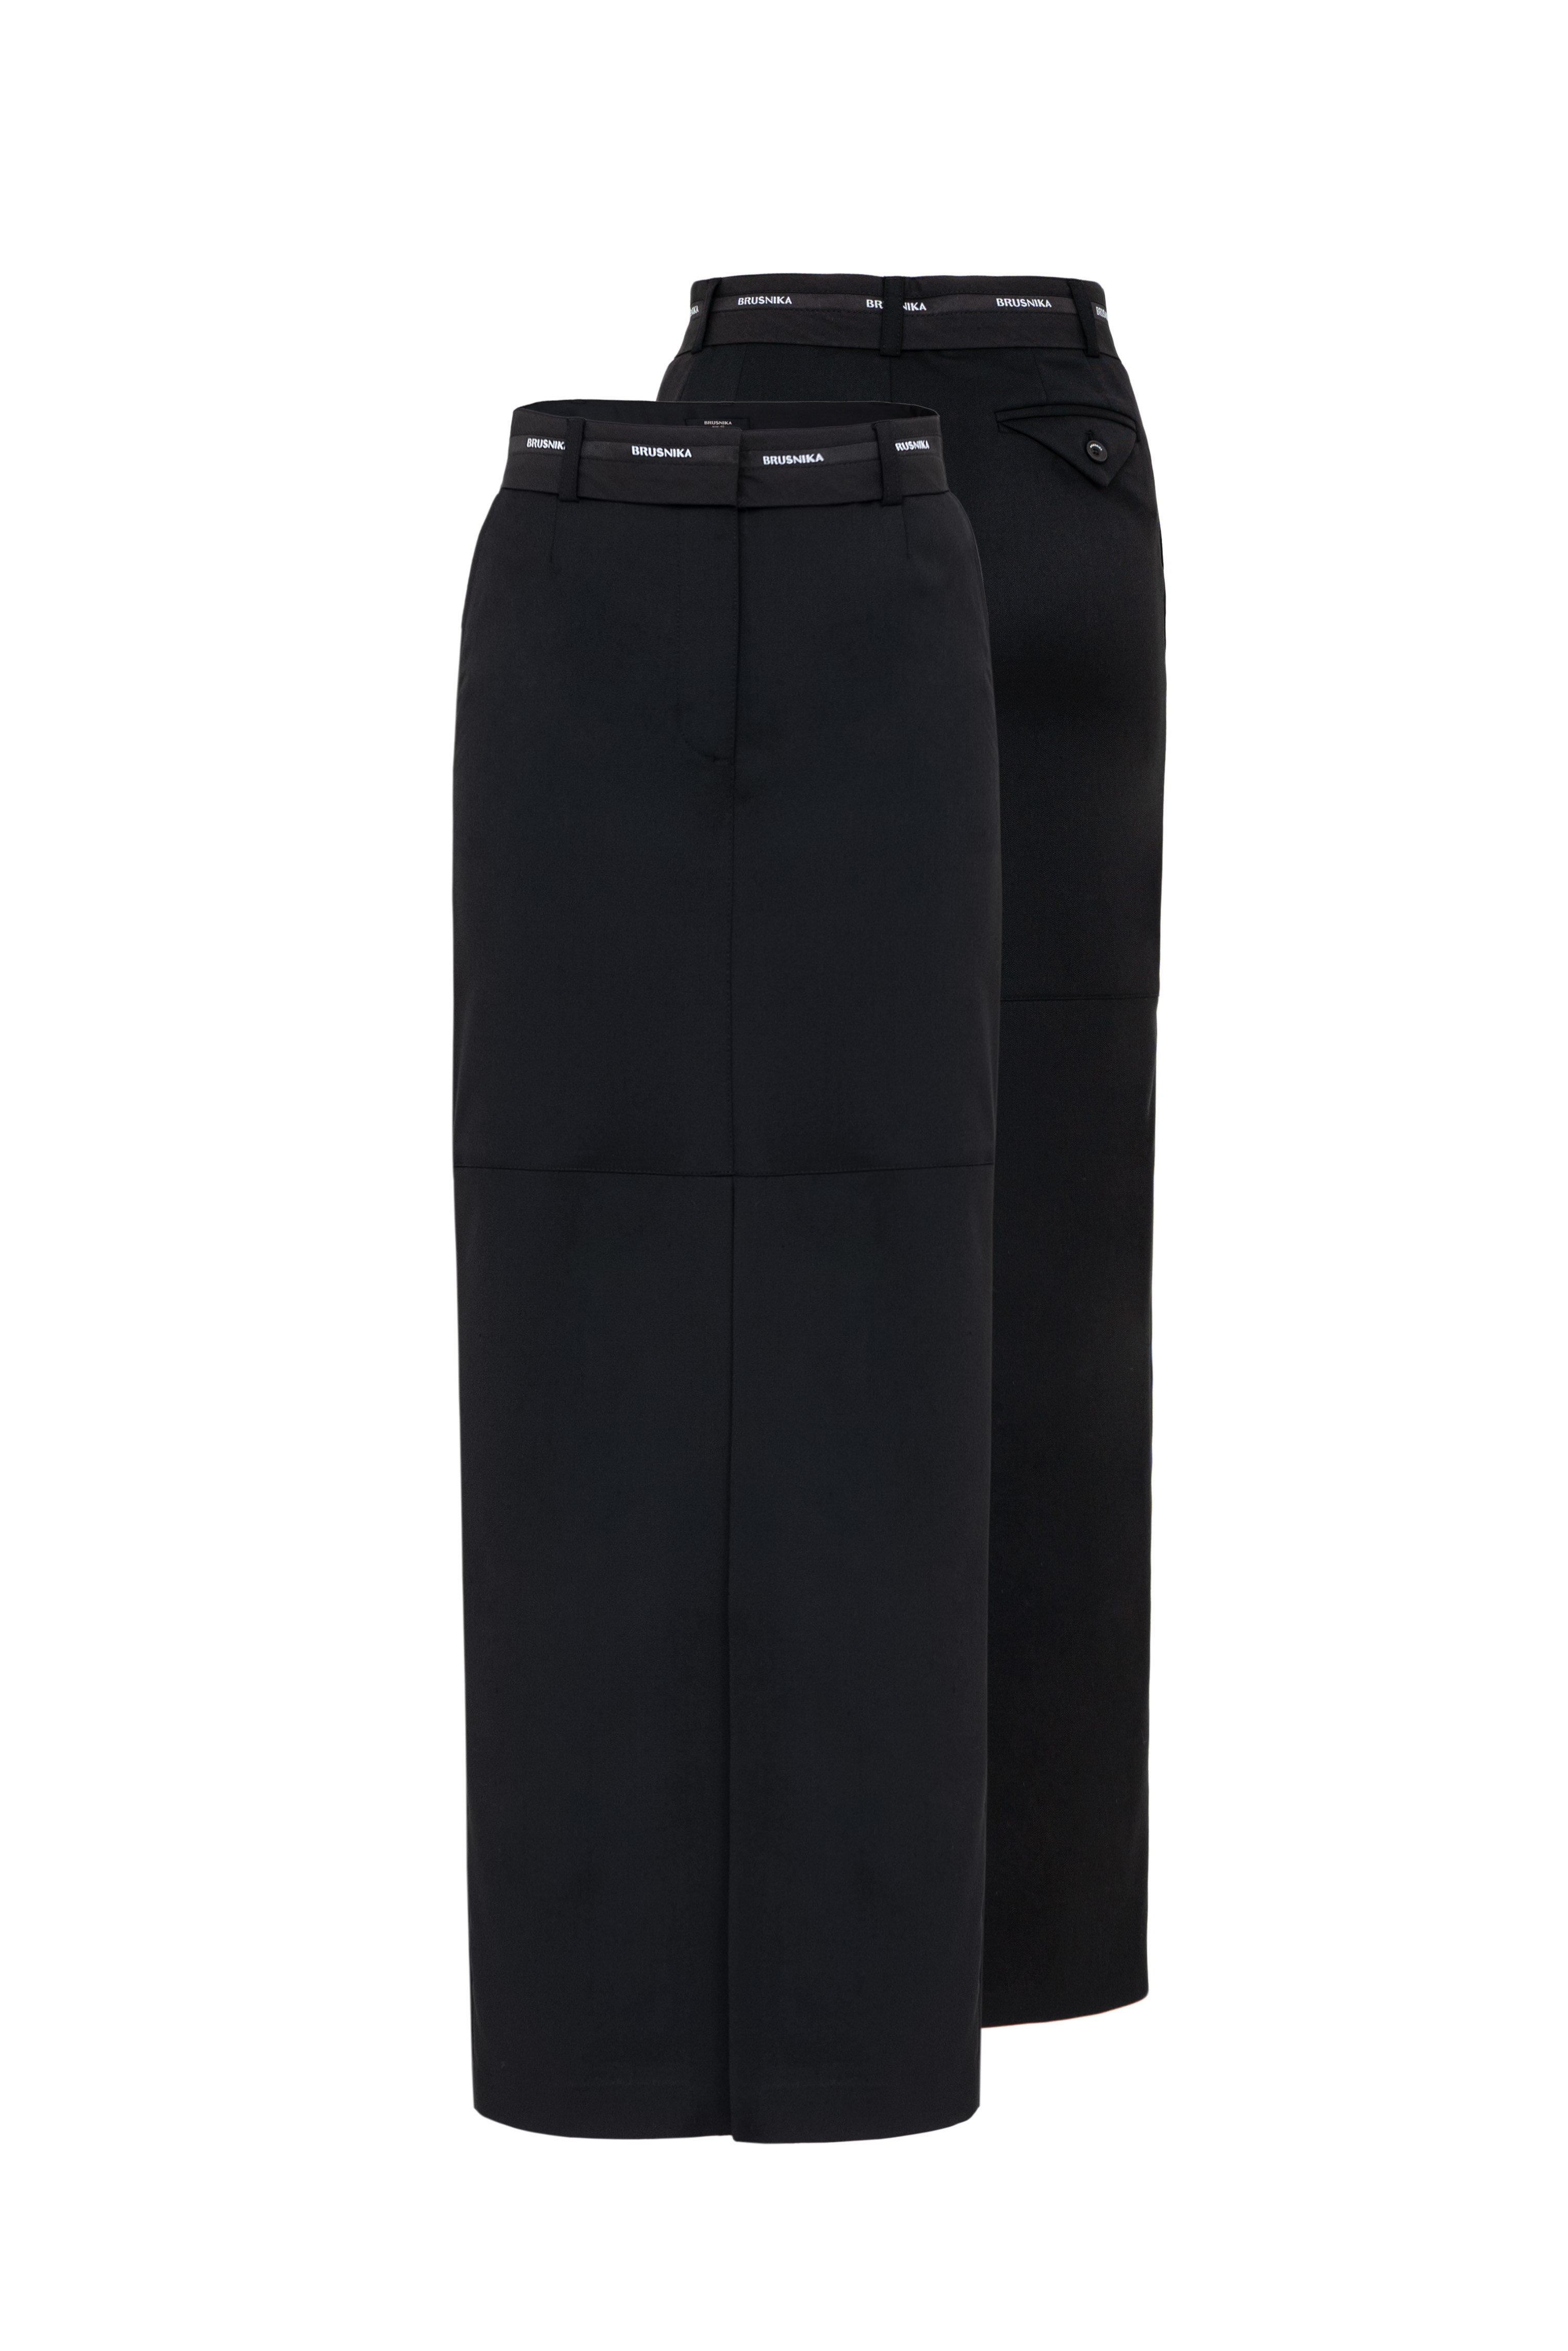 Skirt 4779-01 Black from BRUSNiKA